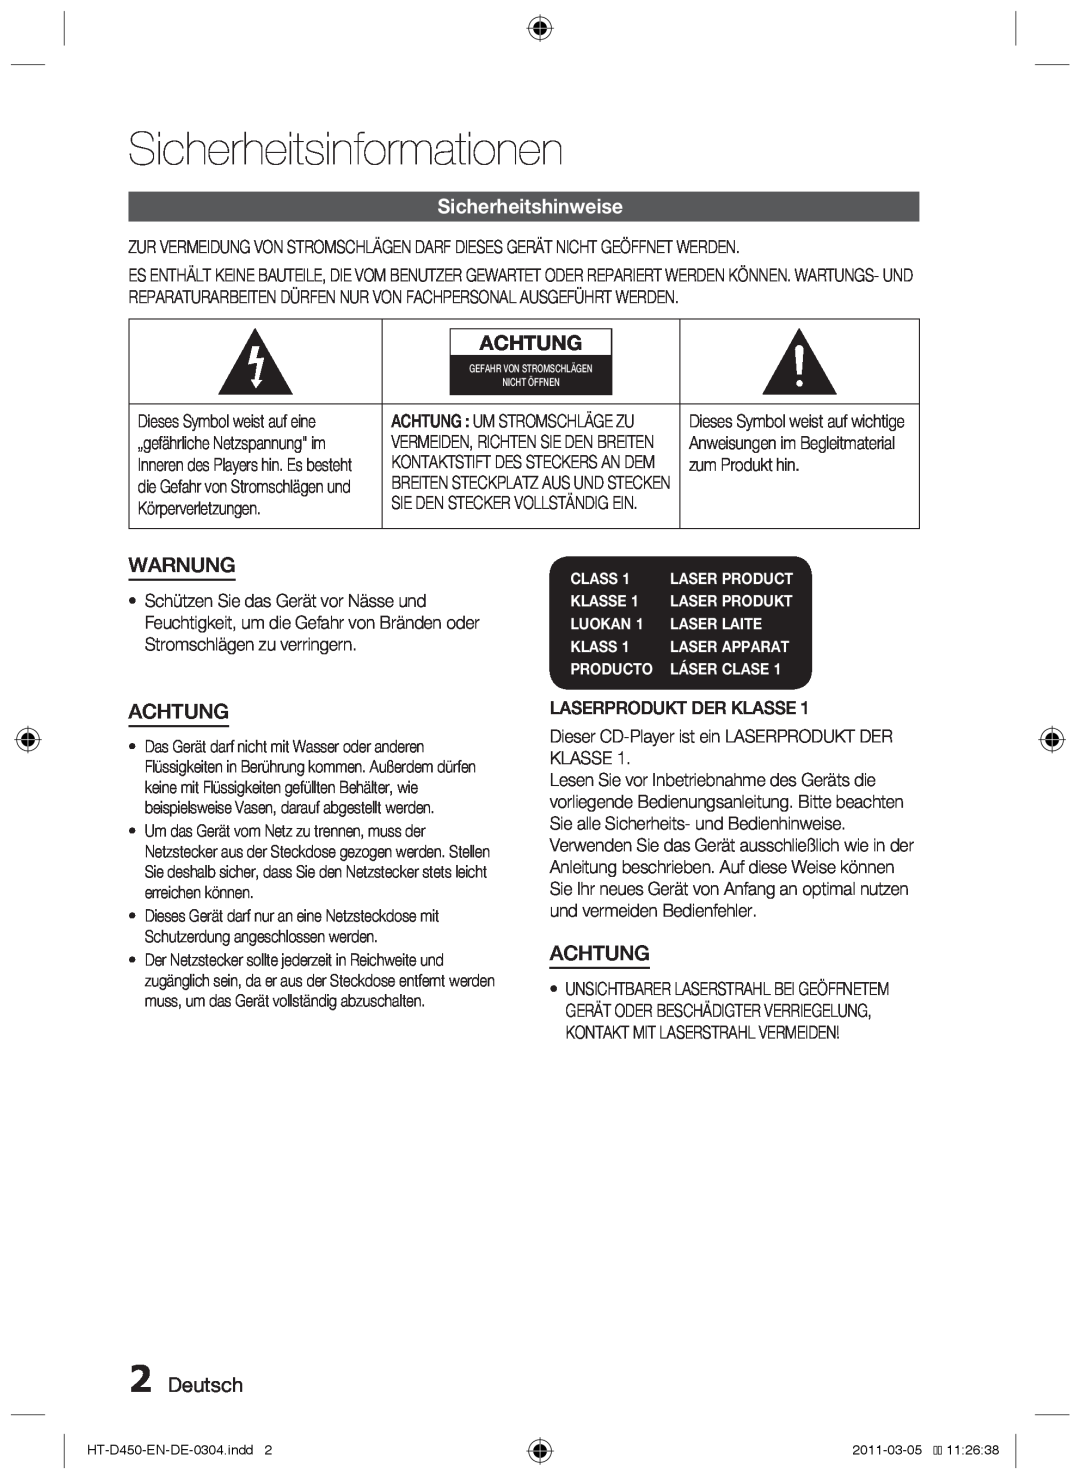 Samsung HT-D453 Sicherheitsinformationen, Sicherheitshinweise, Achtung, Warnung, Deutsch, Class, Klasse, Luokan, Producto 